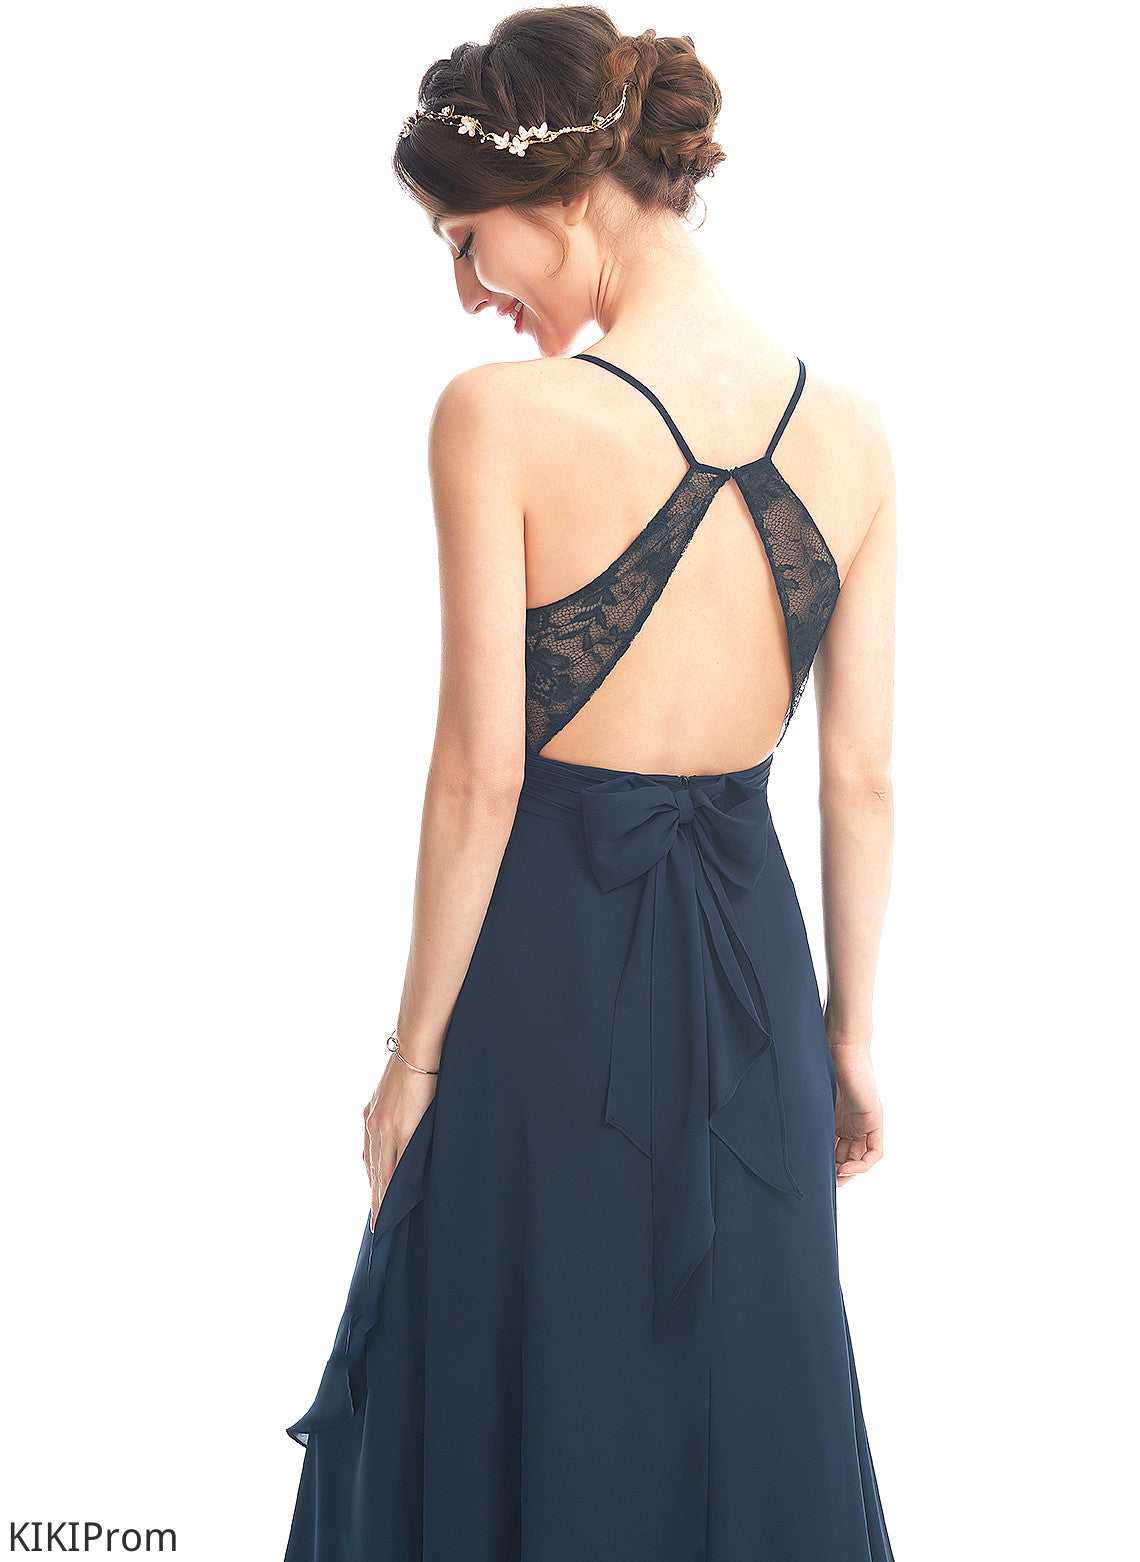 Silhouette Asymmetrical Length Neckline V-neck Fabric Embellishment Bow(s) Lace A-Line Elena Bridesmaid Dresses